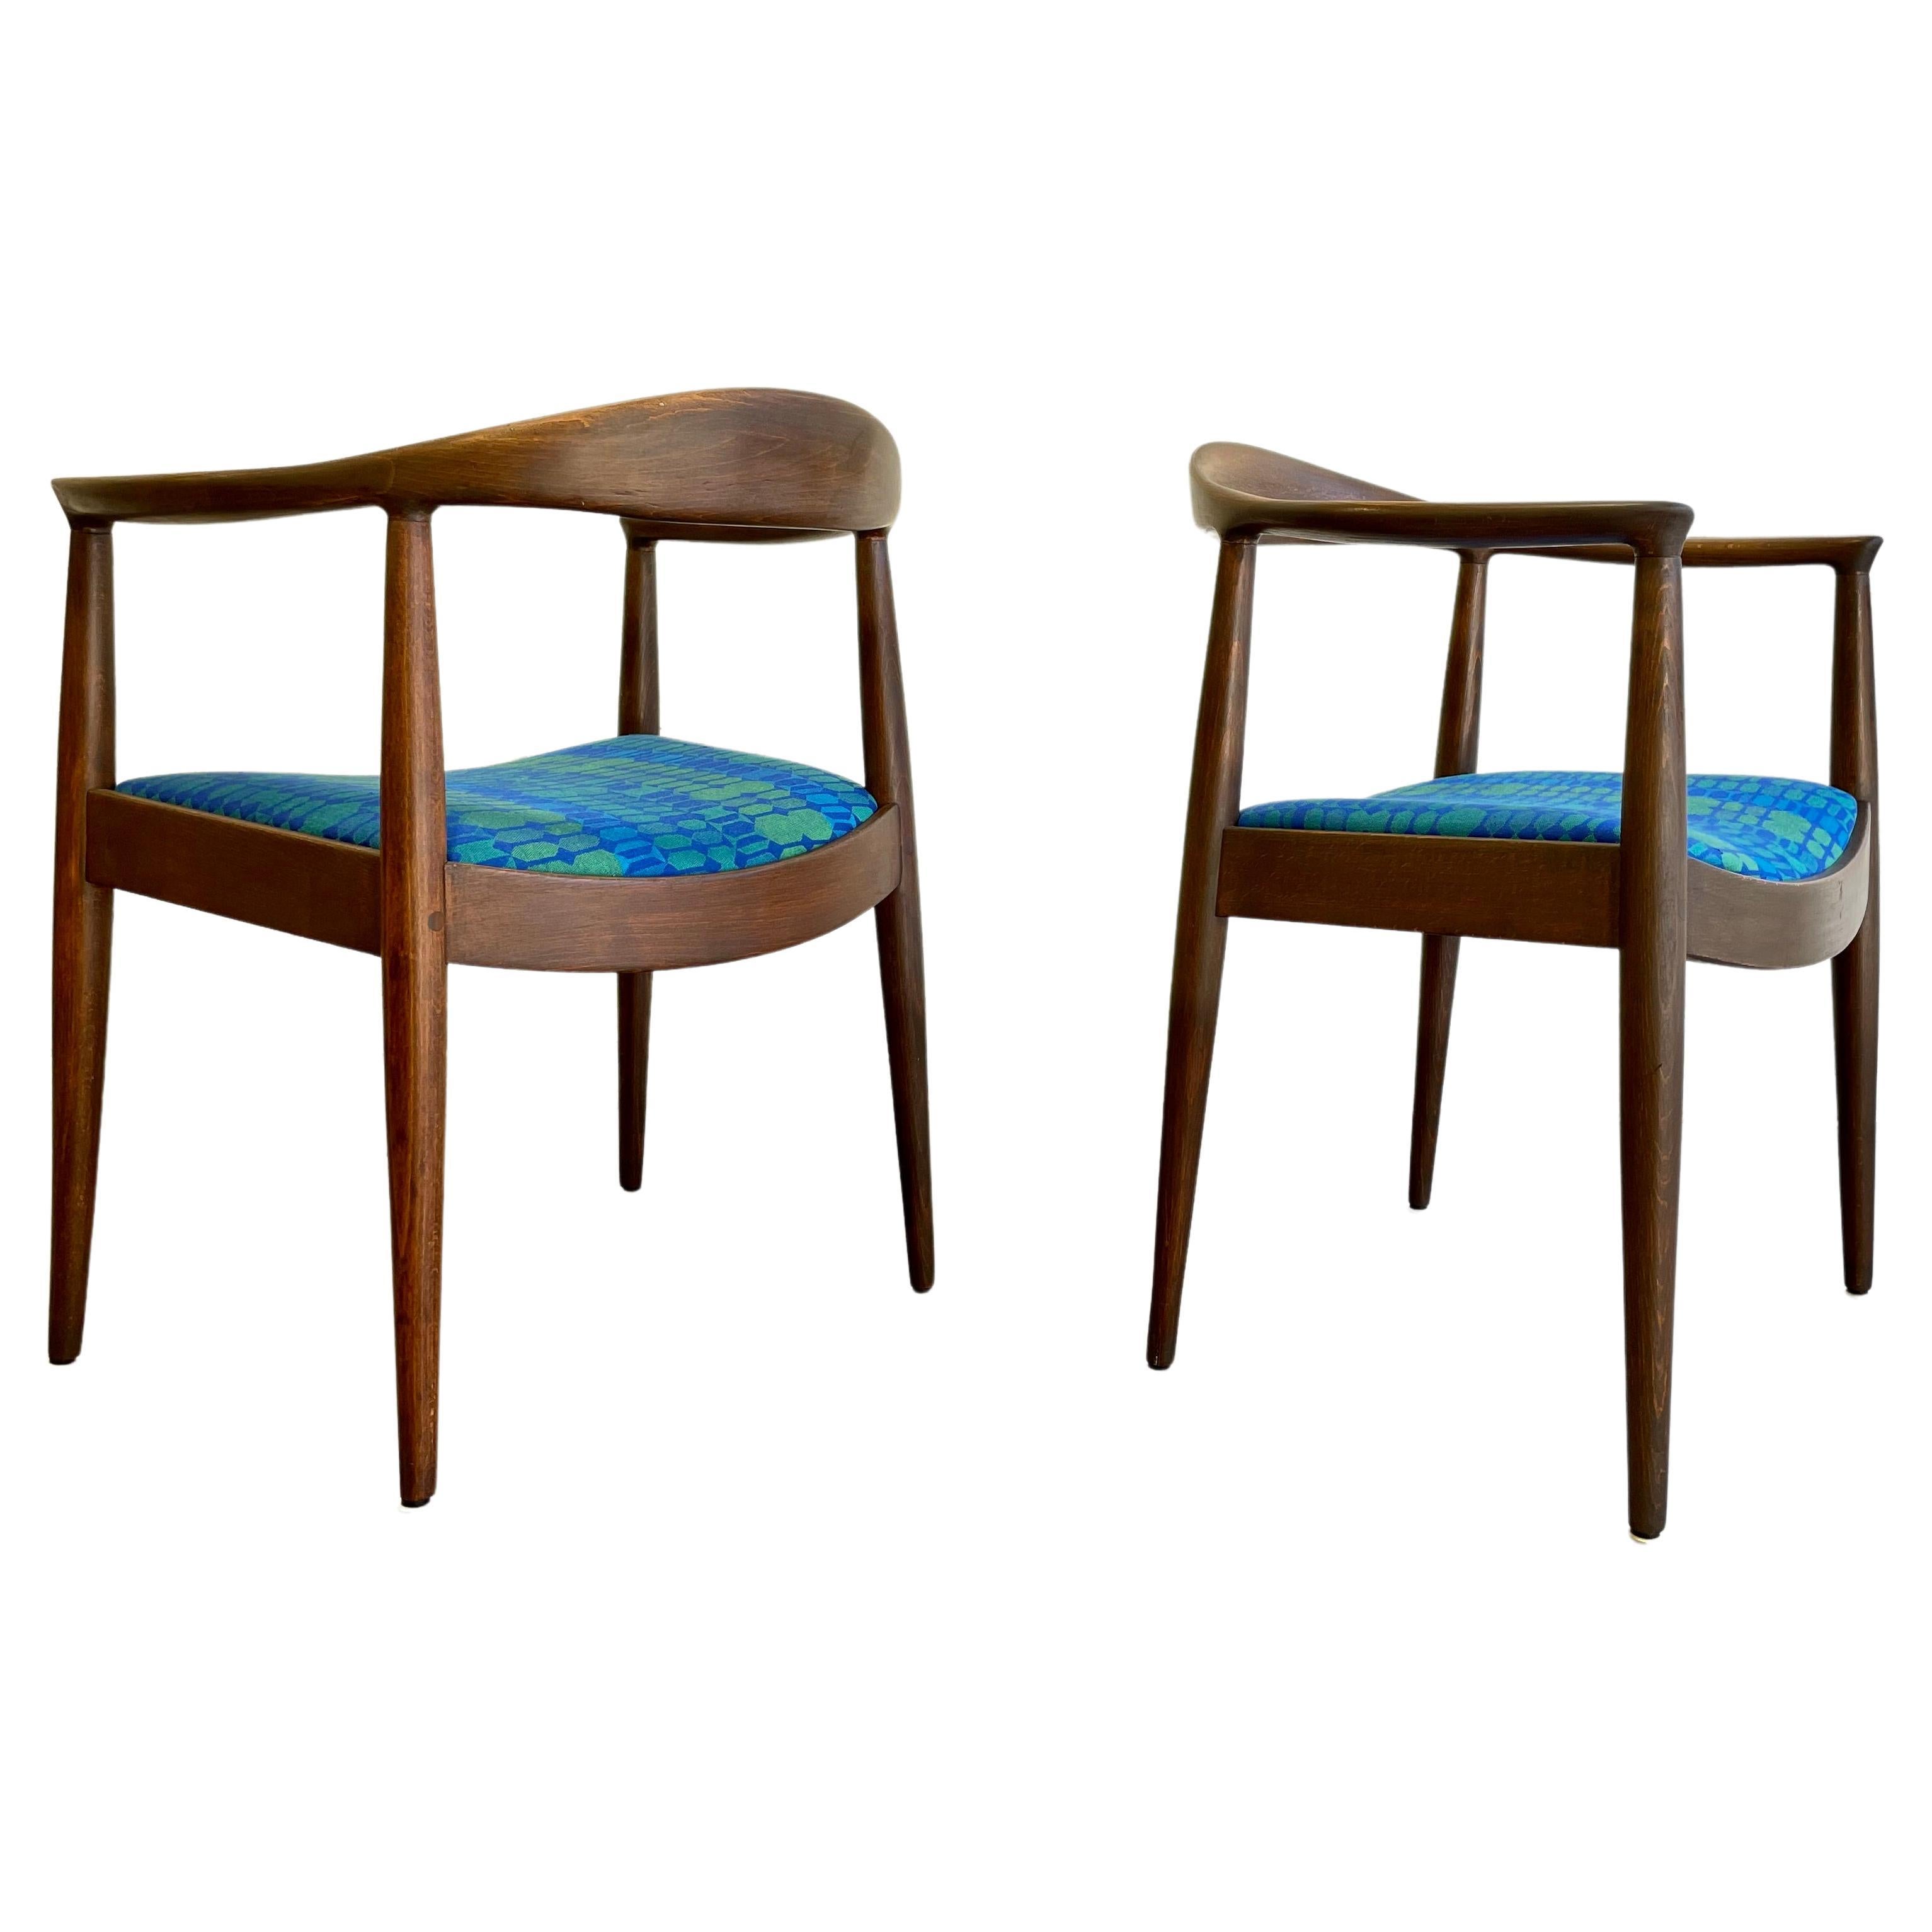 Vintage Mid Century Modern Lounge Chairs im Stil von Hans Wegner. Der elegante, geschwungene Rahmen aus Nussbaumholz ist wunderschön konstruiert, und die Stühle sind neu lackiert, so dass die herrliche Holzmaserung besonders gut zur Geltung kommt.